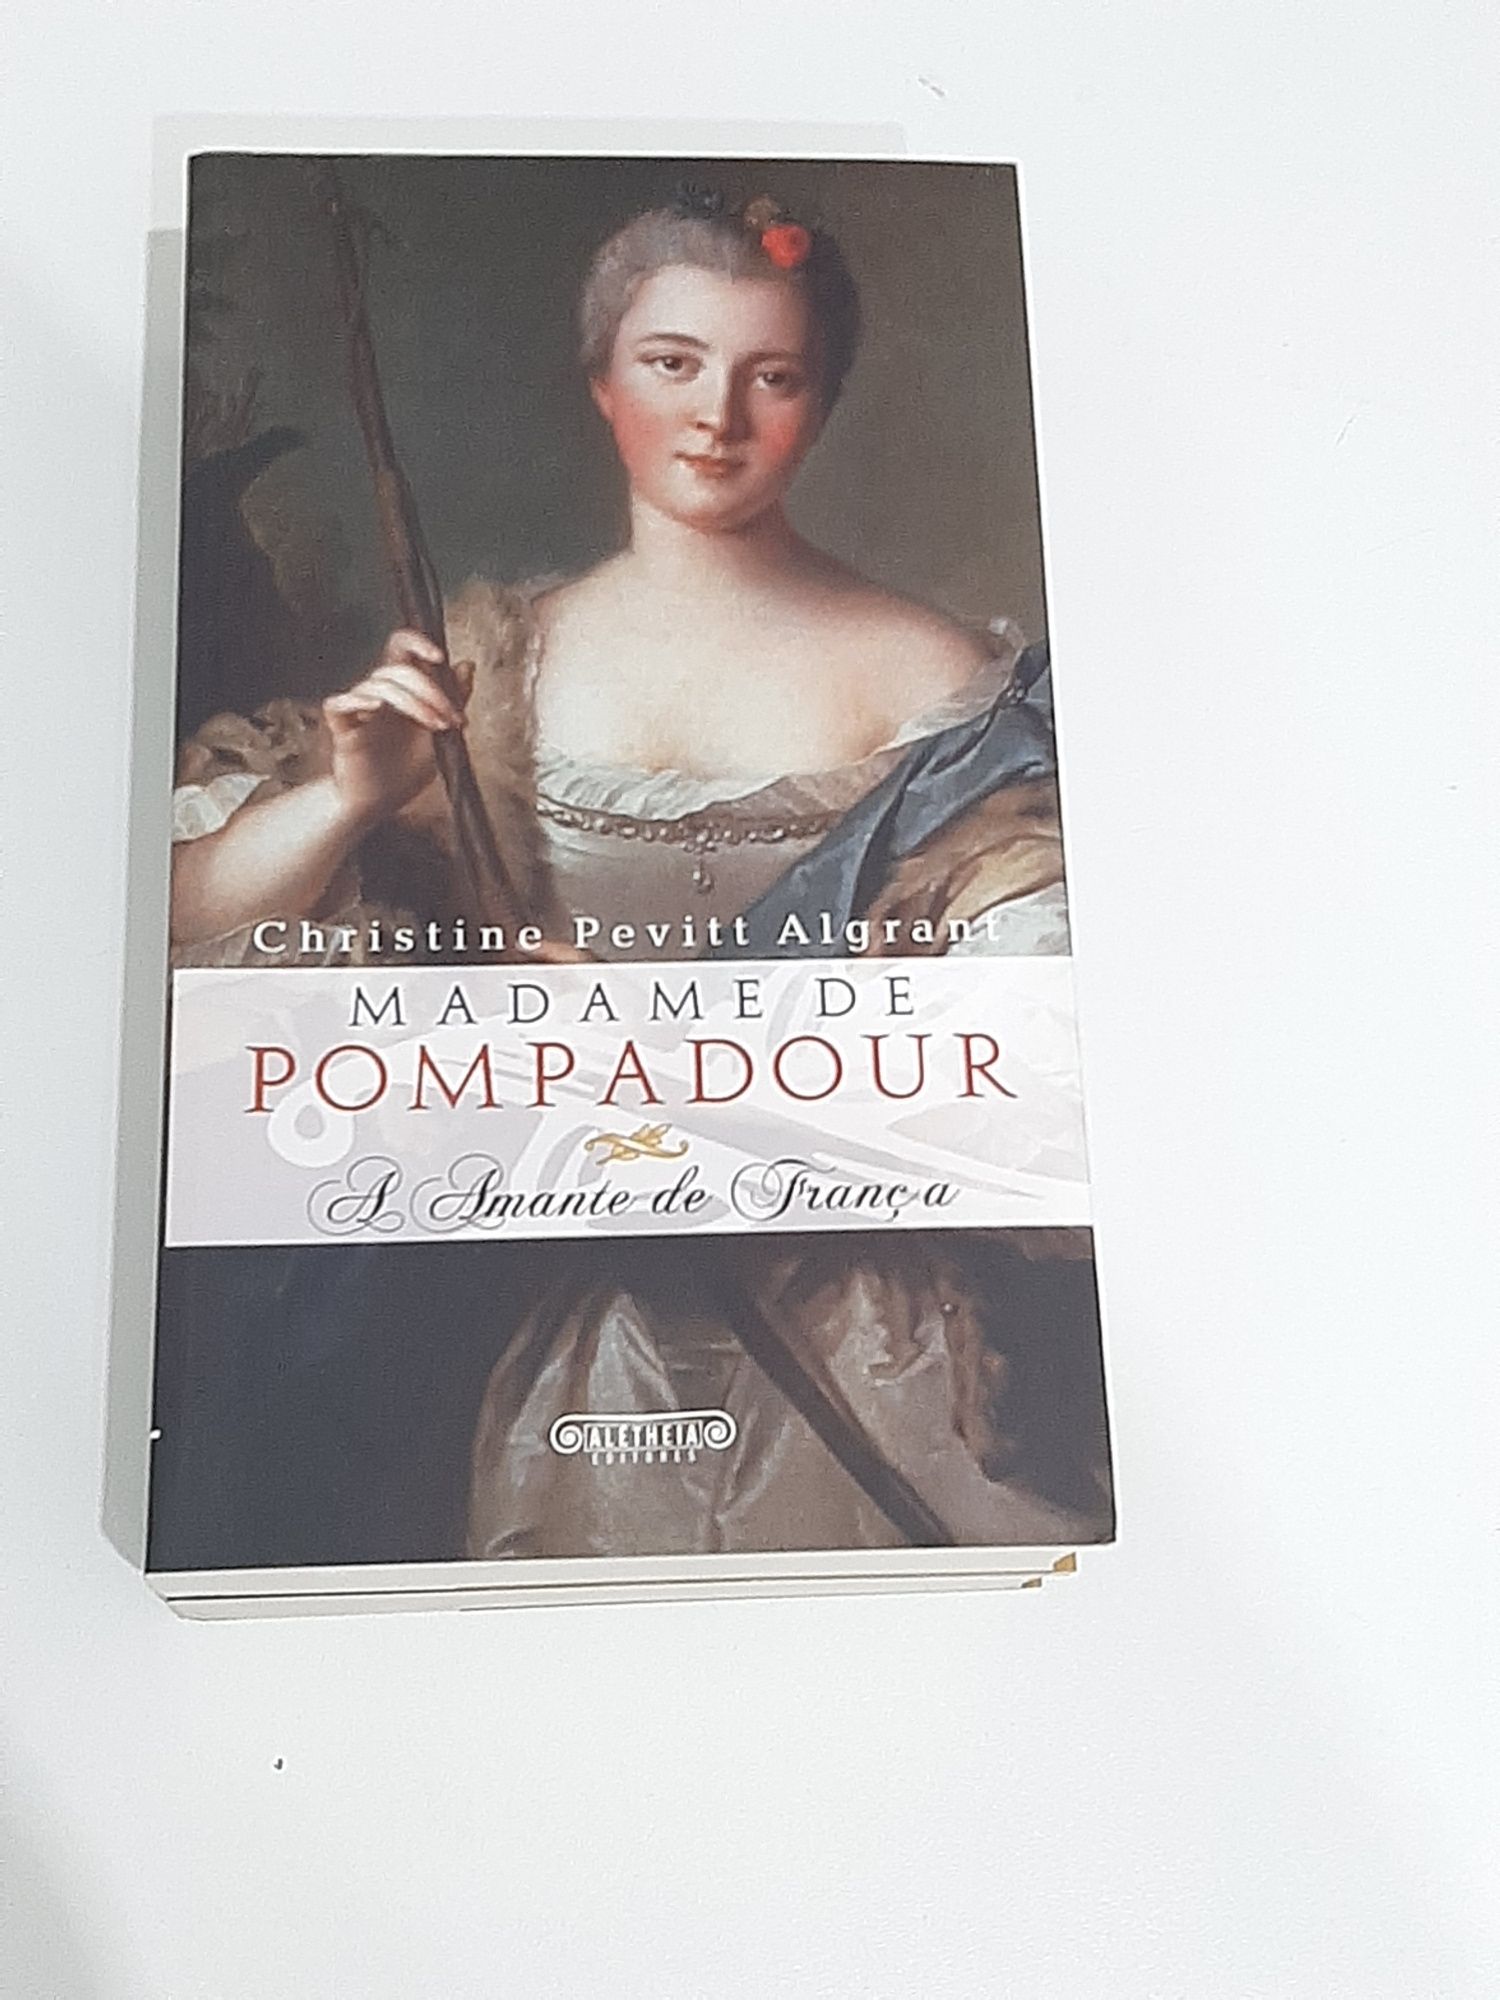 Biografia - Madame de Pompadour - A Amante de França - Portes Gratis